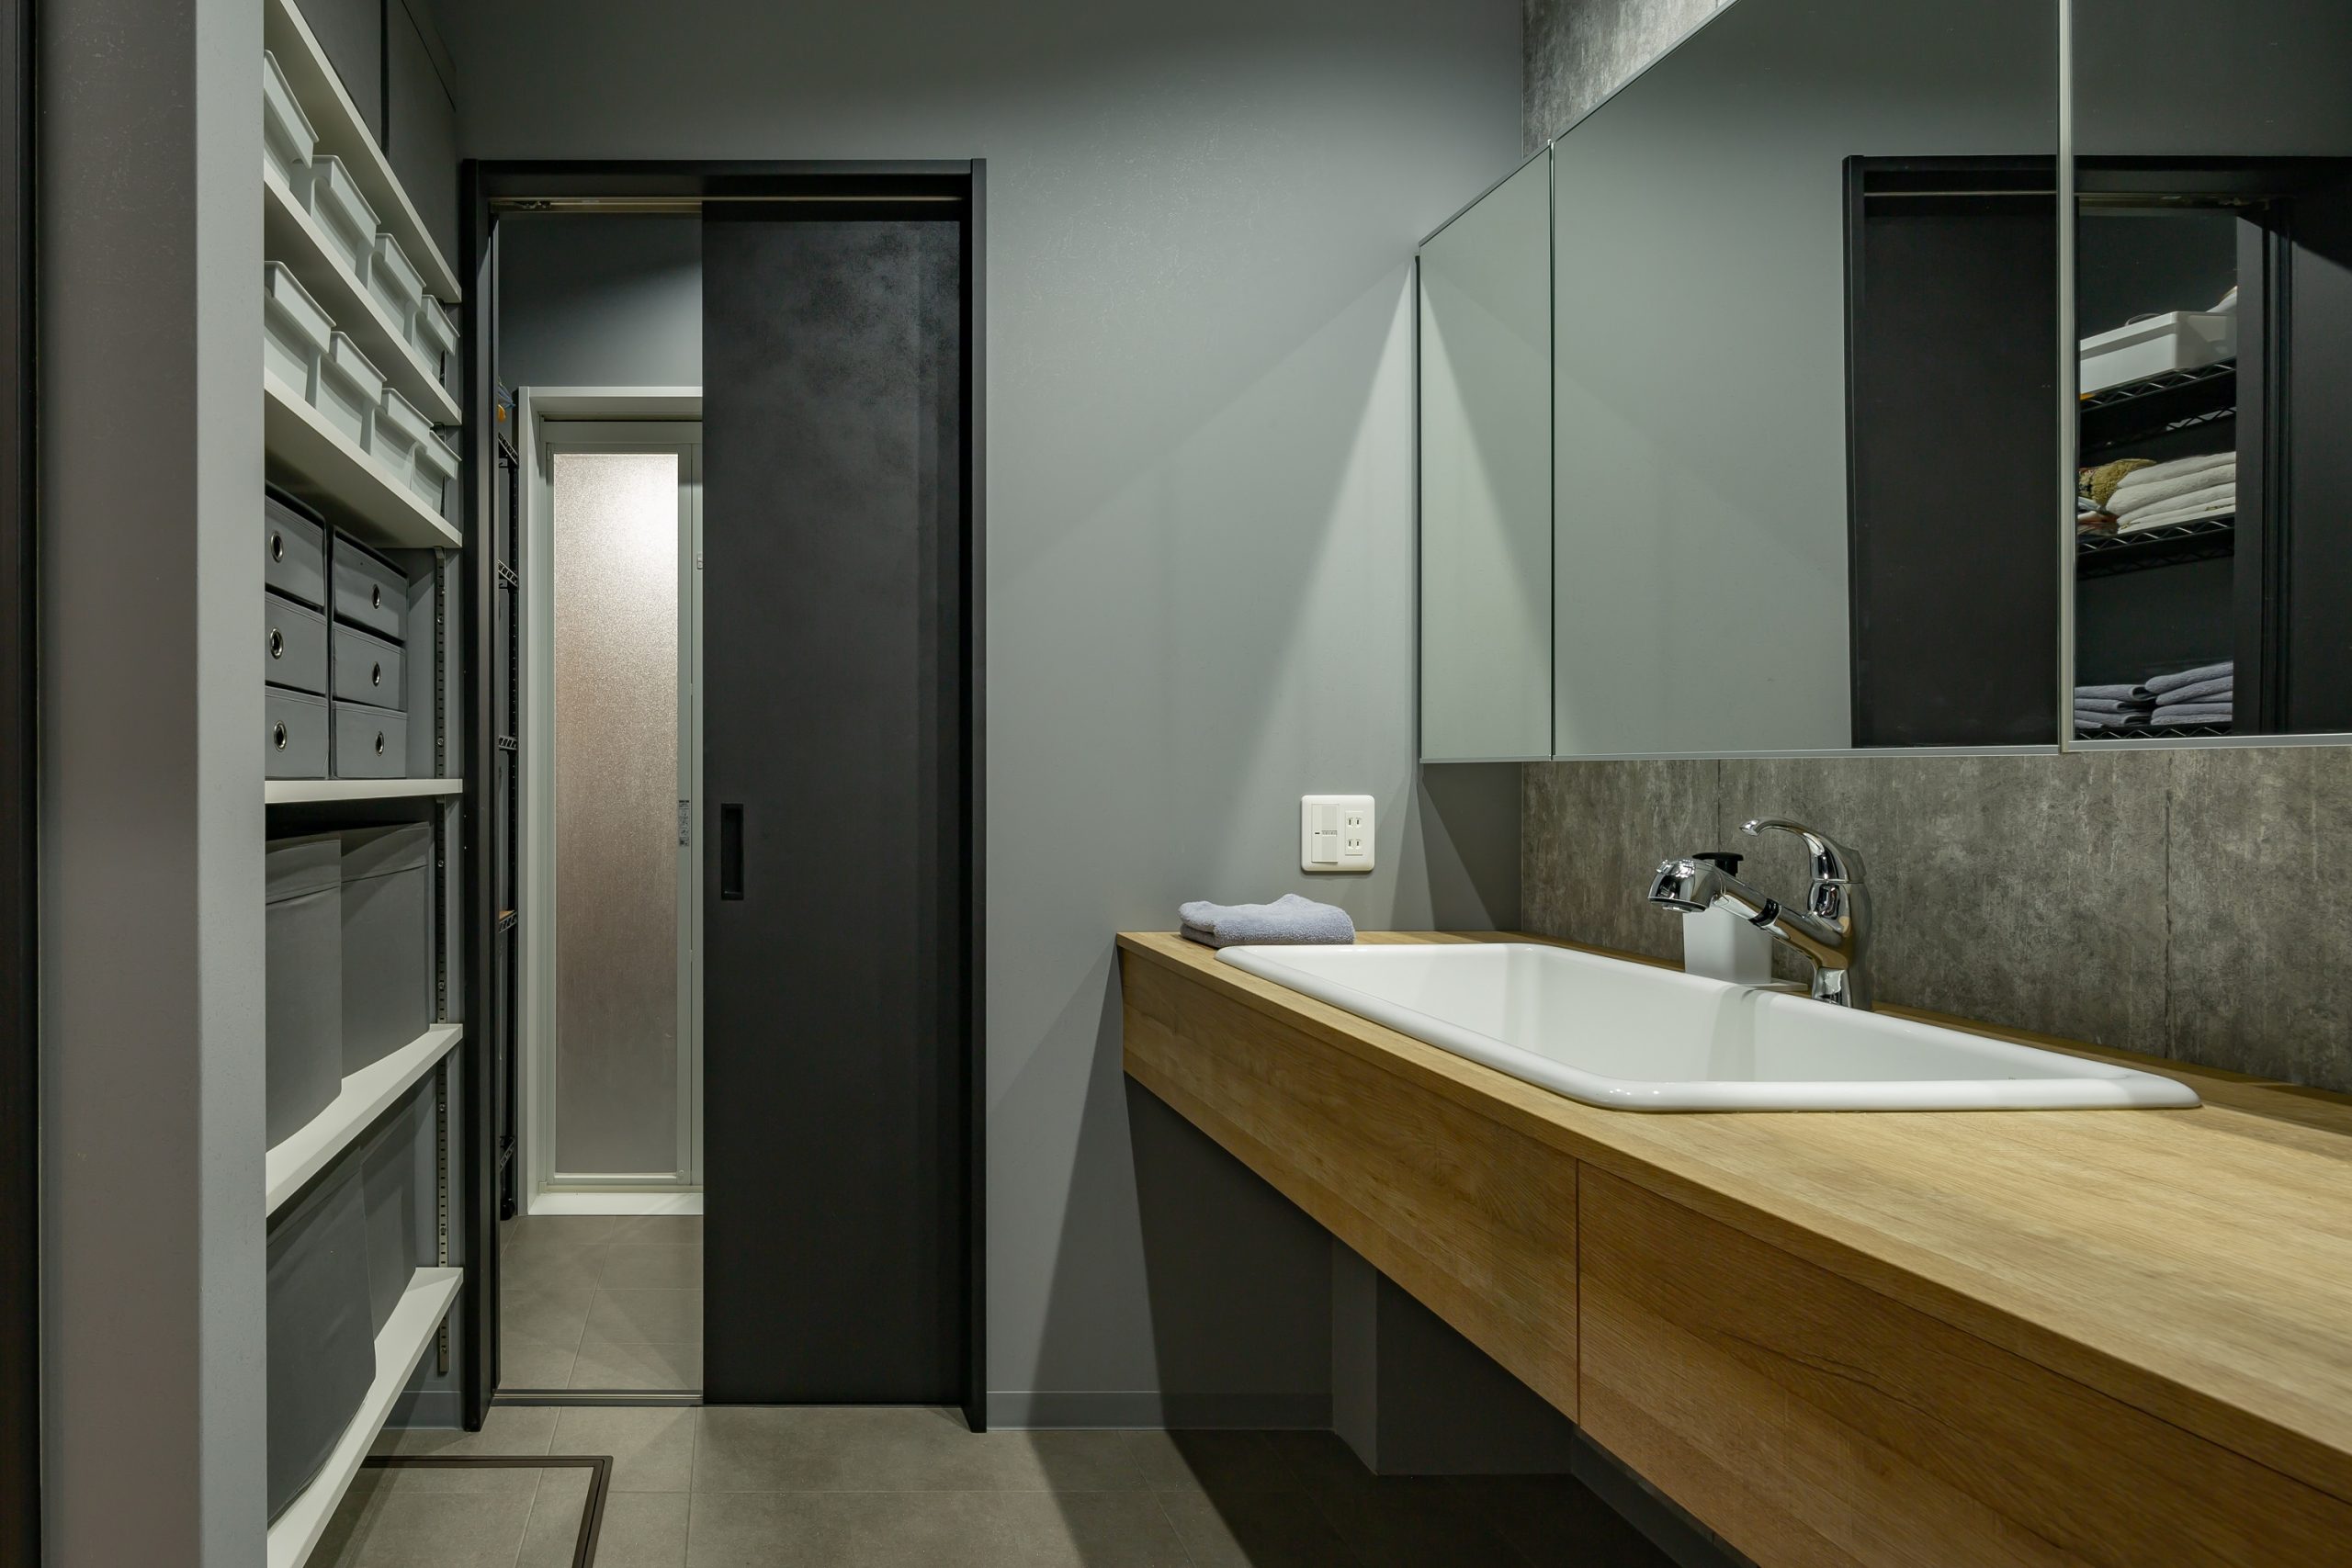 生活感が出やすい洗面室は機能的かつスッキリとデザイン